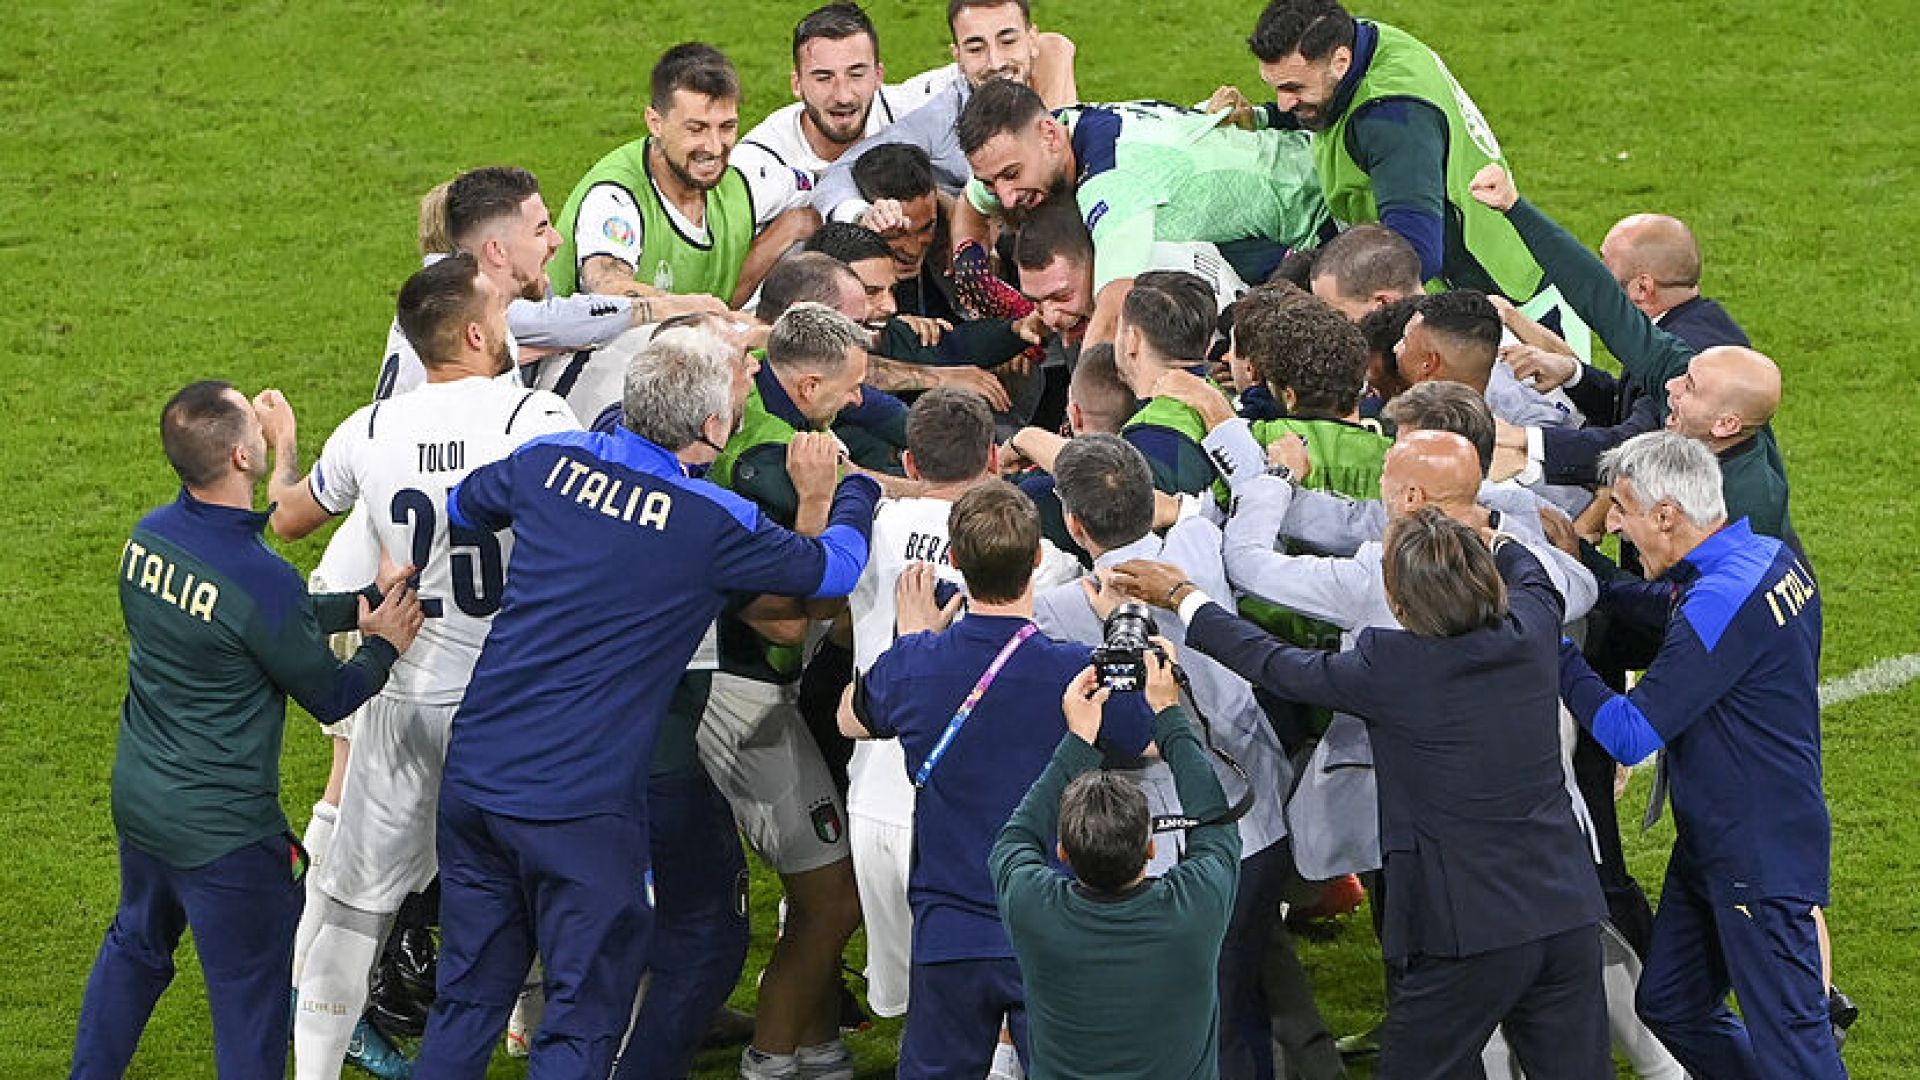 EURO 2020: Italy Triumphs Over Belgium to Reach Semis